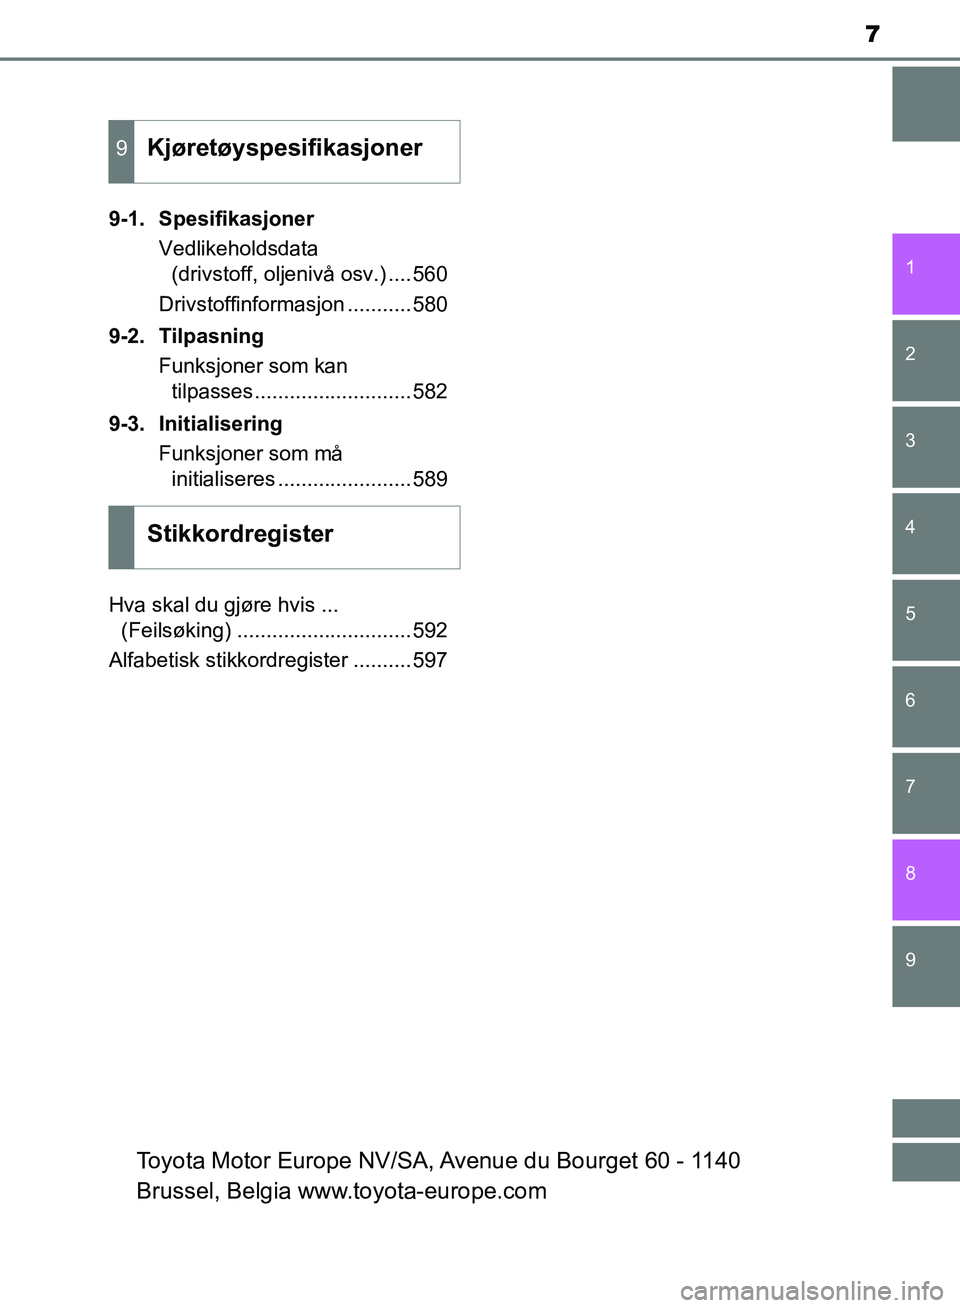 TOYOTA AURIS 2018  Instruksjoner for bruk (in Norwegian) 7
1
9 8
7 5 4
3
2
UK AURIS_HB_EE  (OM12F19NO)
6
9-1. SpesifikasjonerVedlikeholdsdata (drivstoff, oljenivå osv.) ....560
Drivstoffinformasjon ...........580
9-2. Tilpasning Funksjoner som kan tilpasse